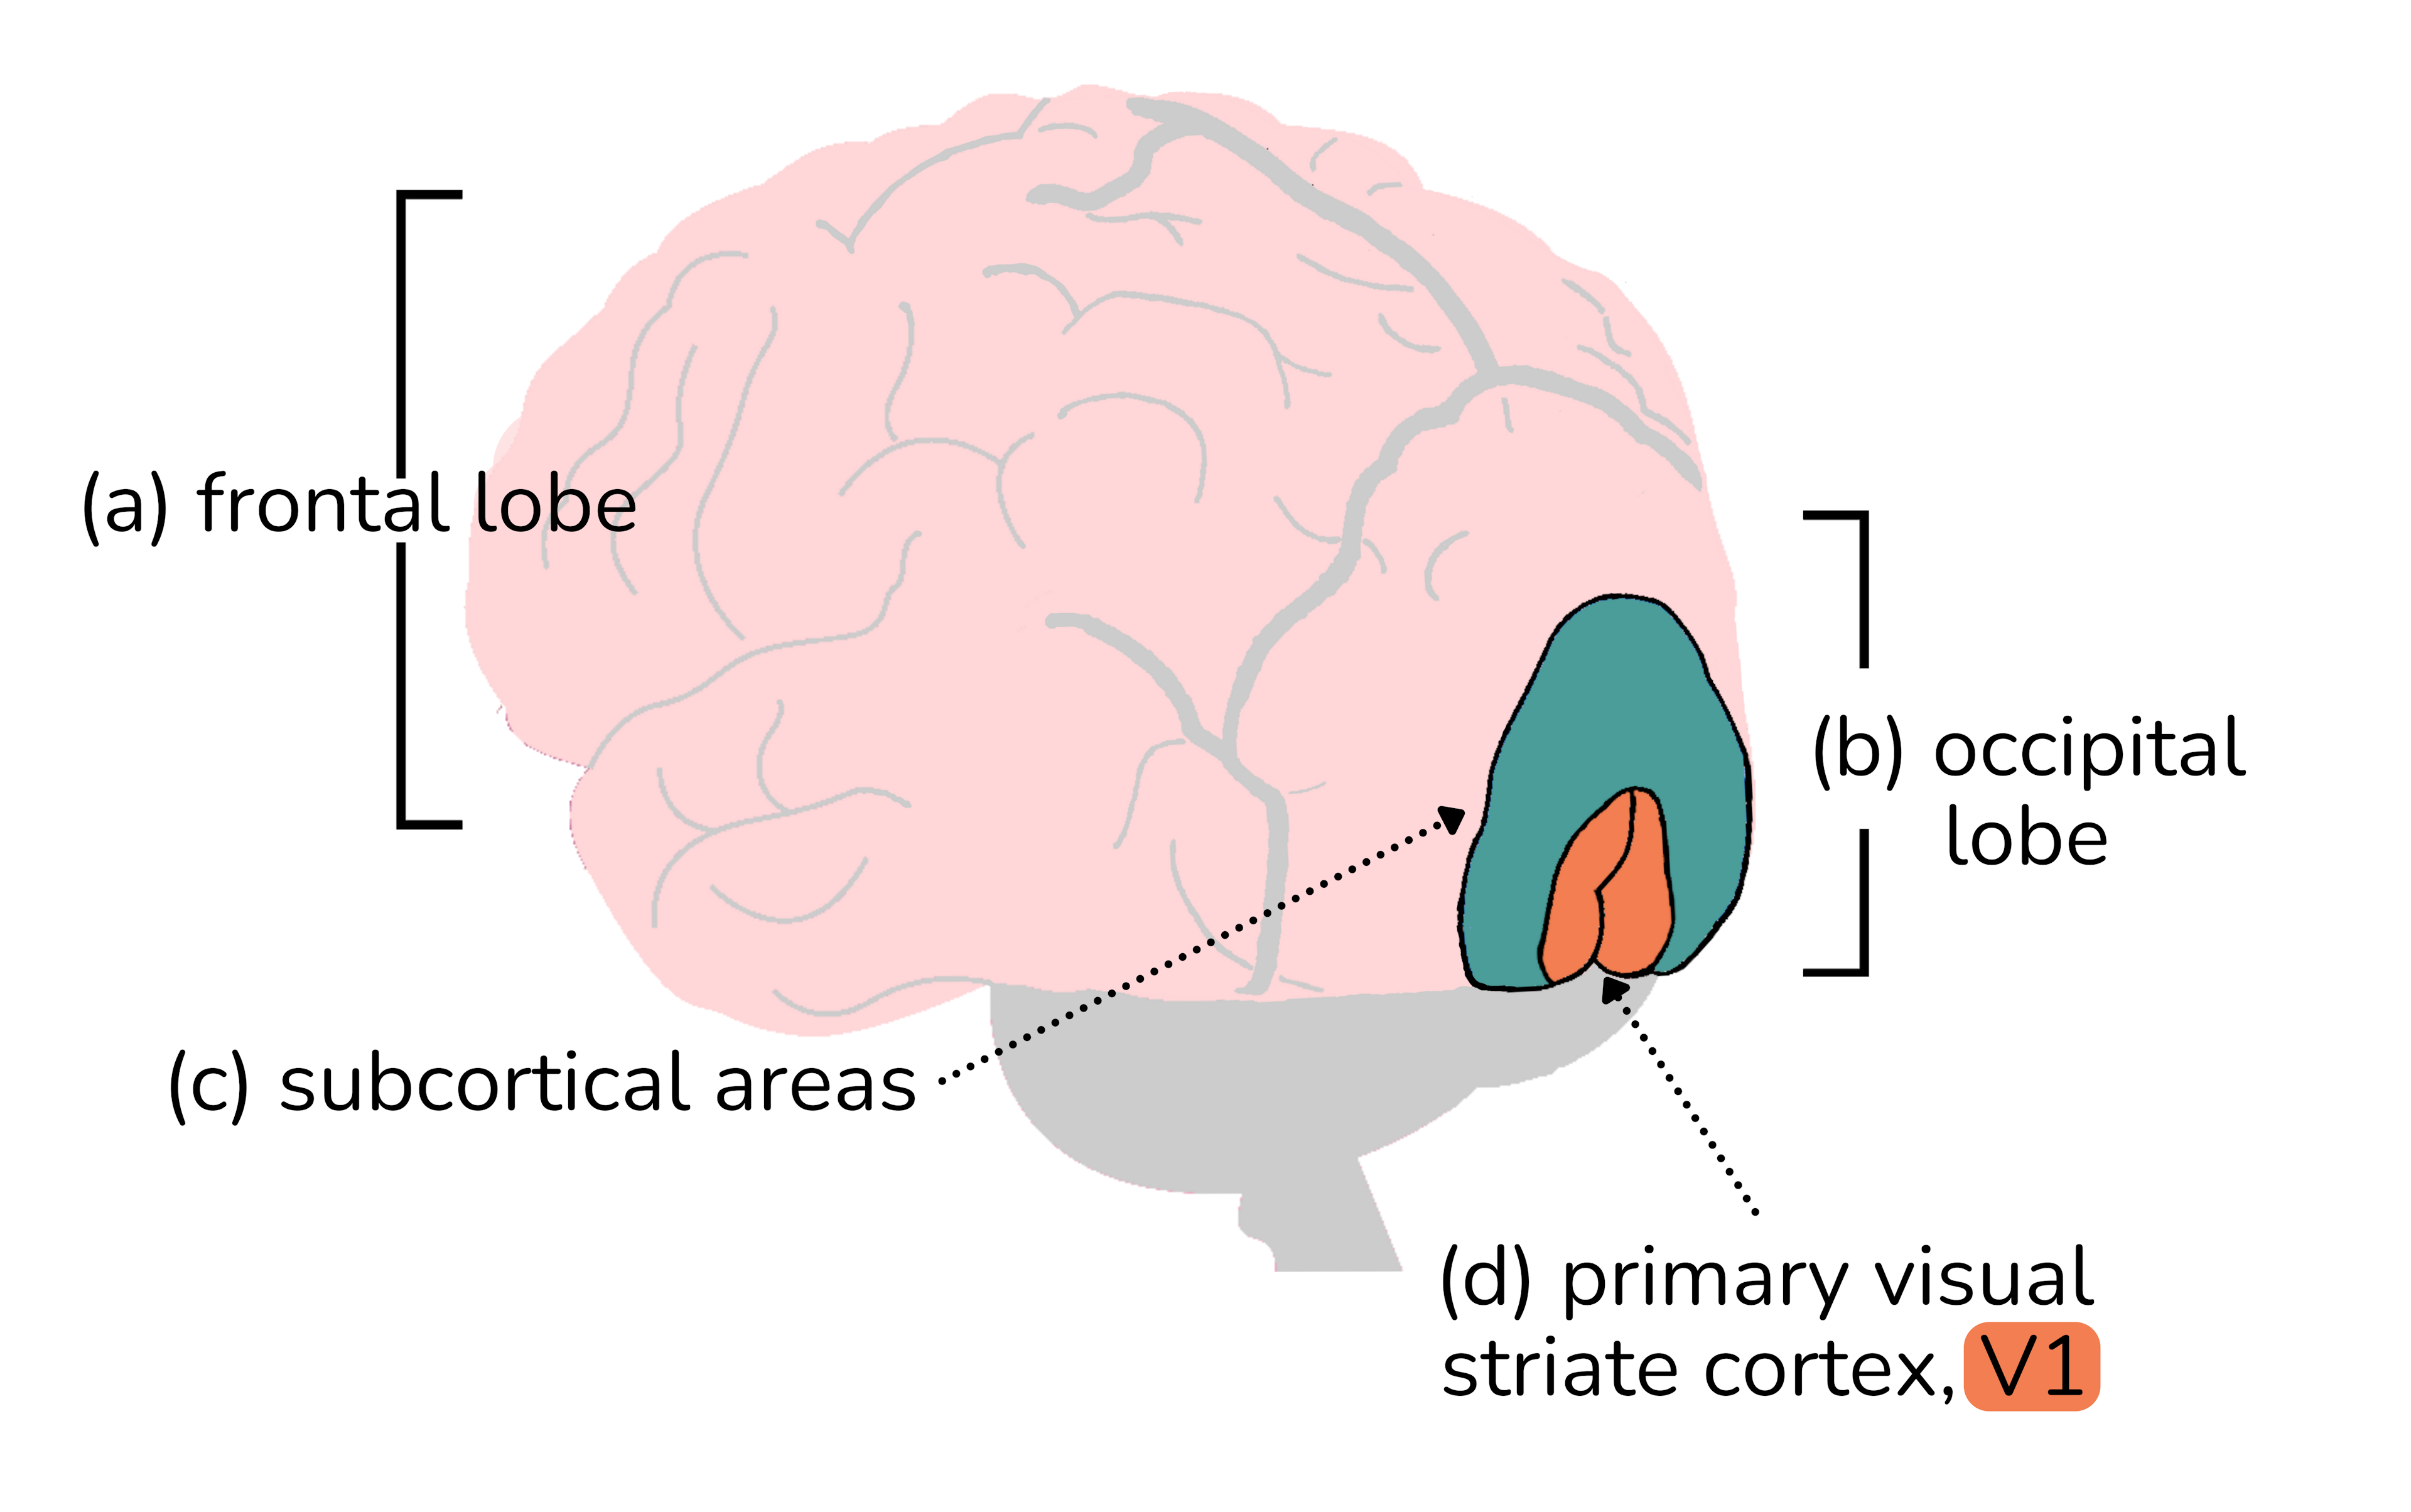 Primary visual striate cortex